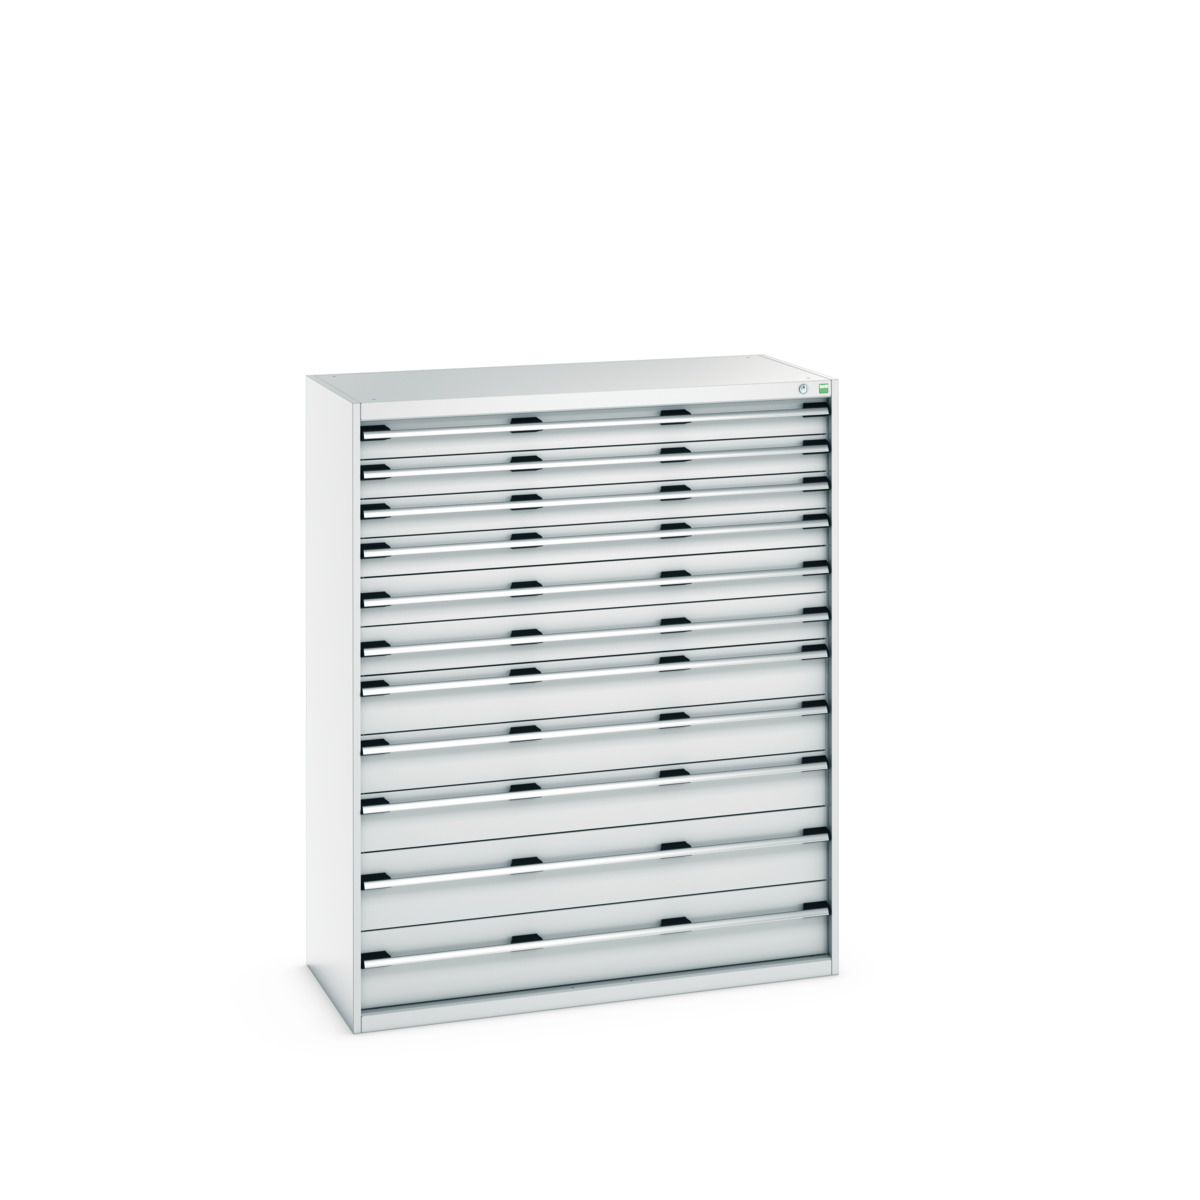 40022135.16V - cubio drawer cabinet